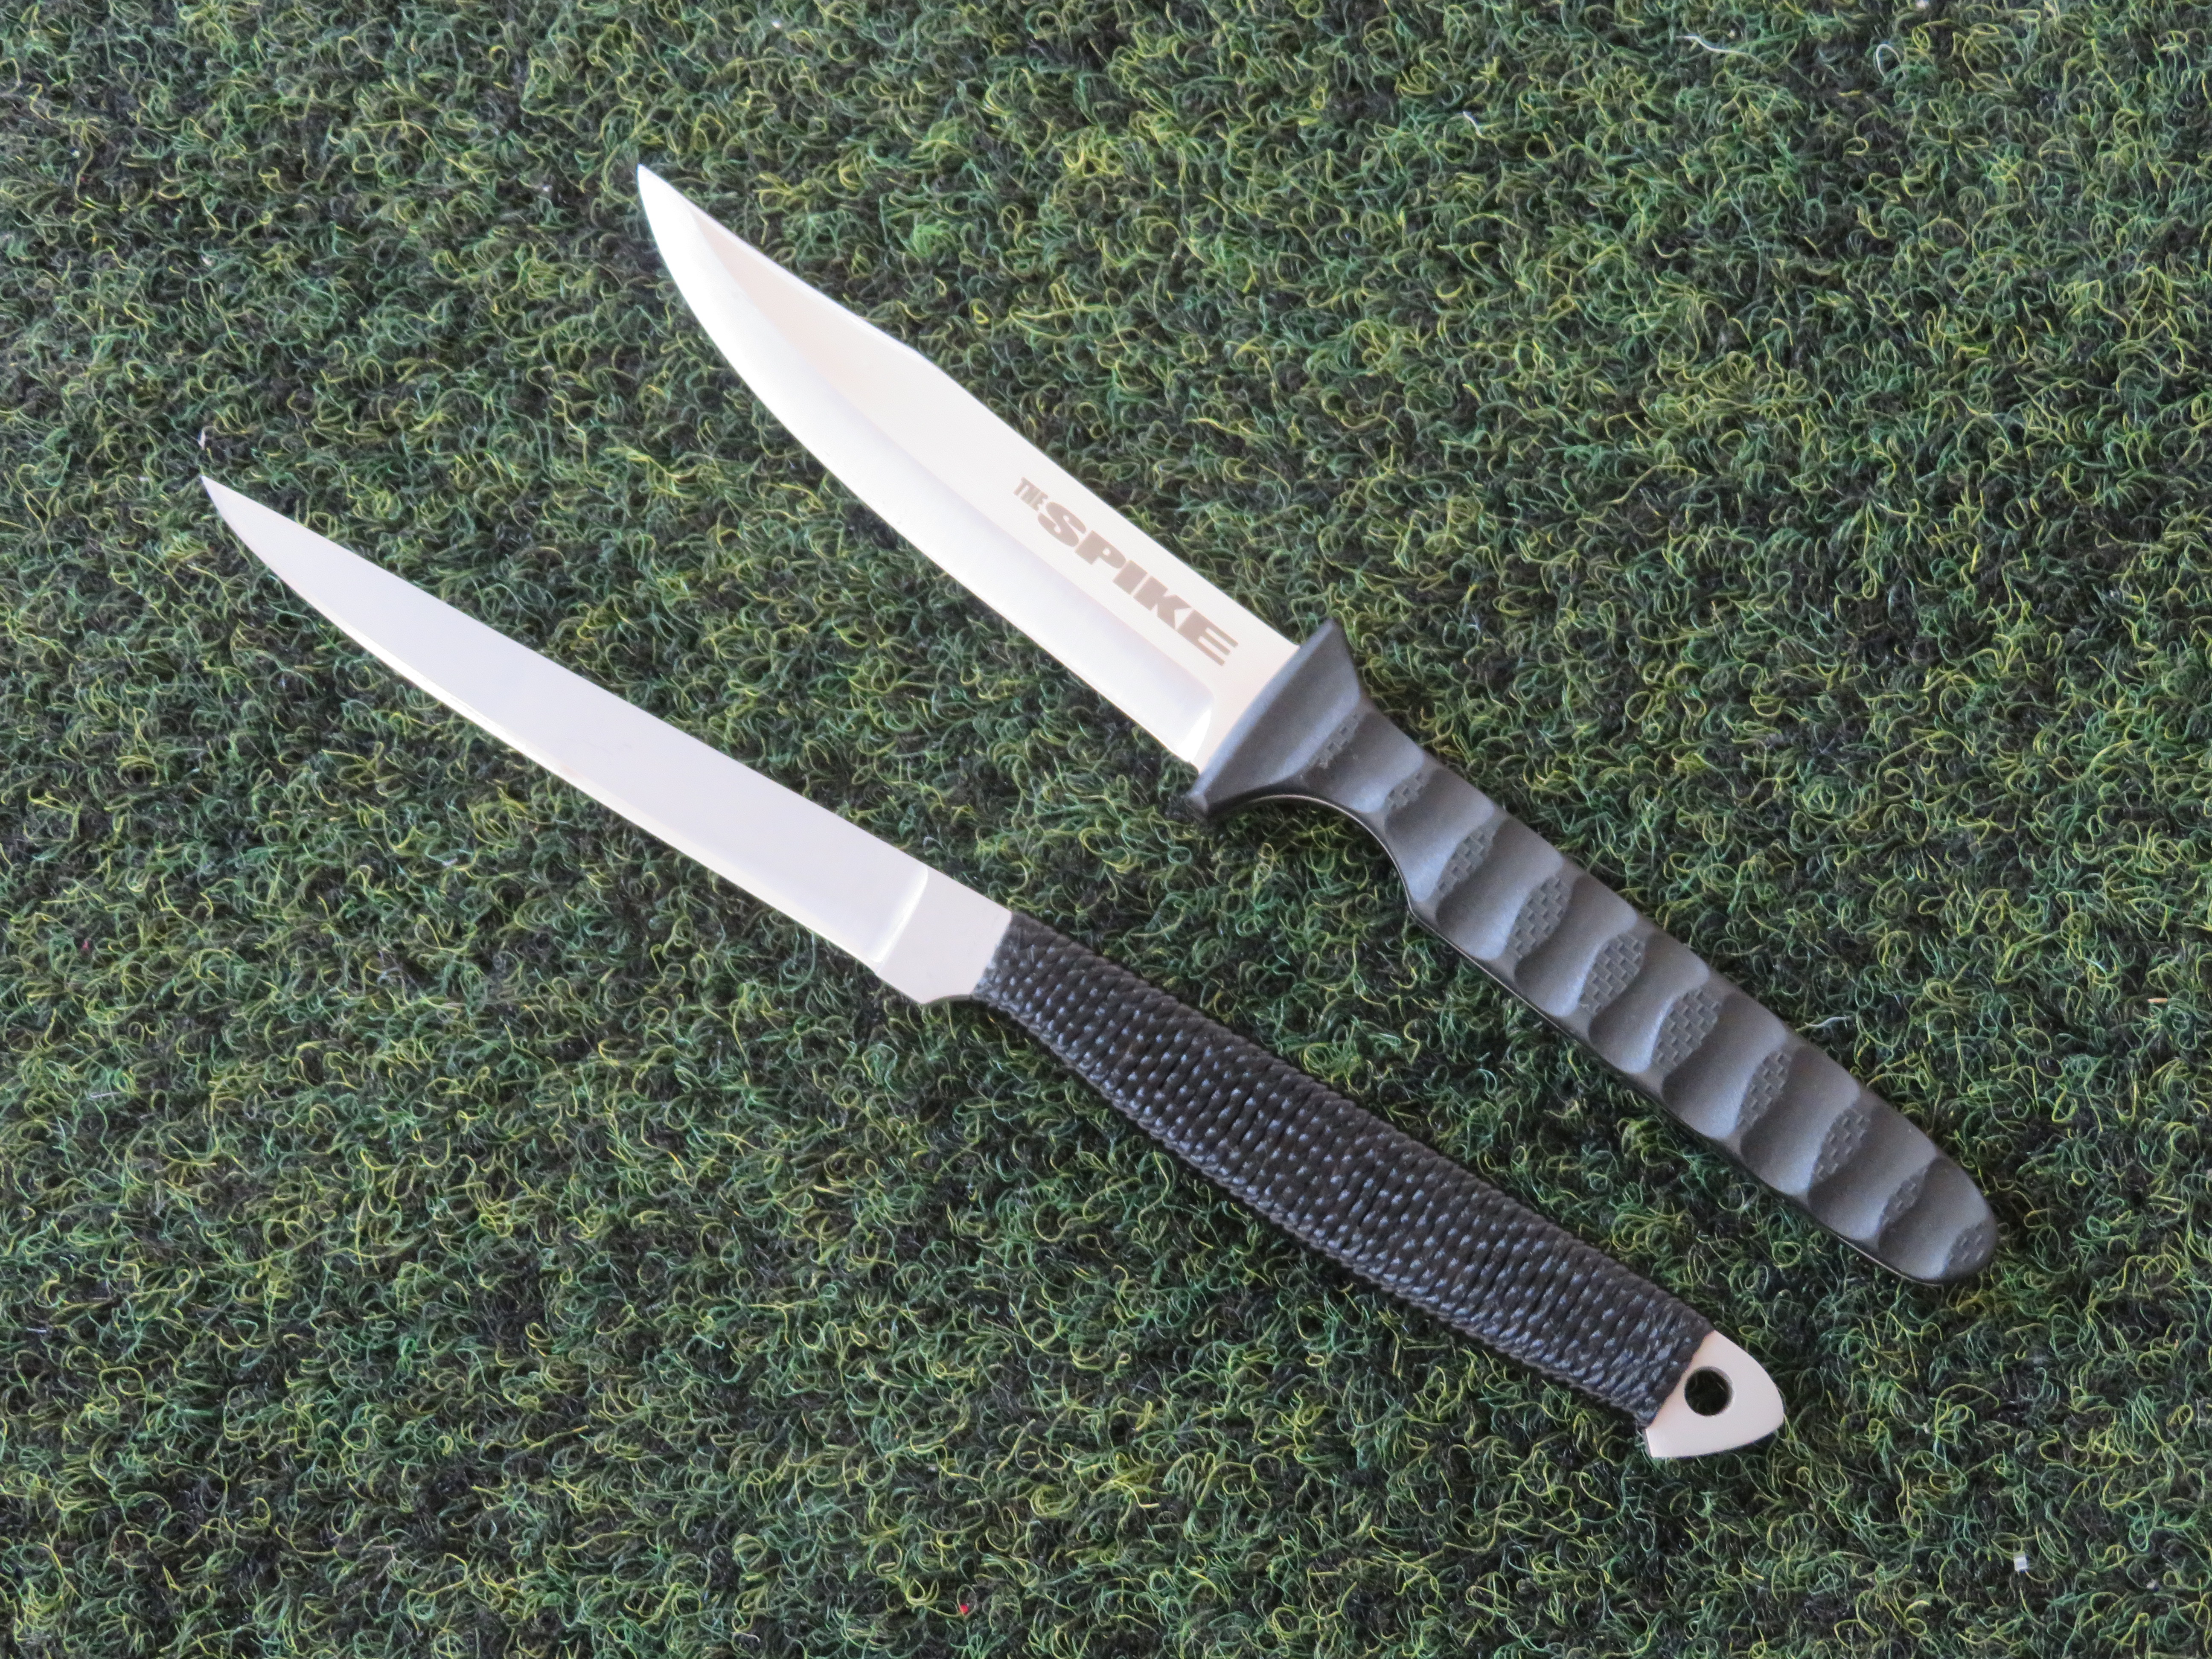 Vlevo první generace nože Spike, vpravo aktuální model nože Spike od společnosti Cold Steel.